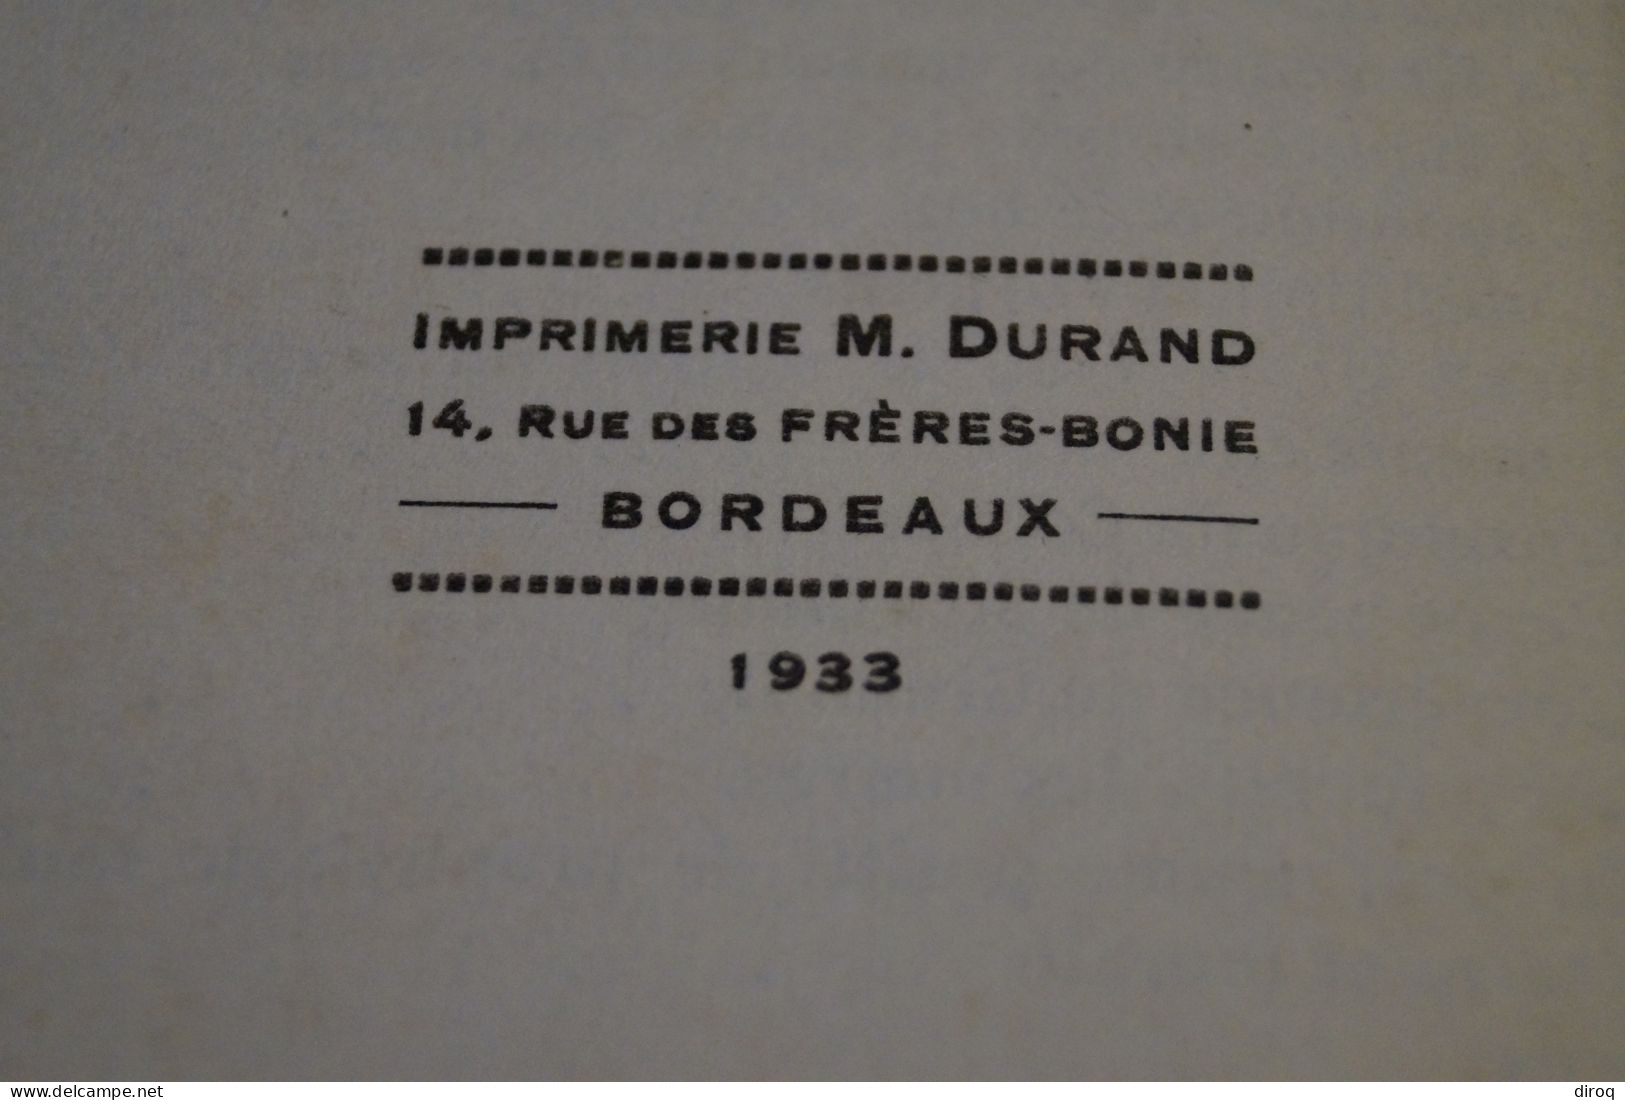 RARE ,1933,règlement sur la prostitution,Paul Gemähling (Alsace)131 pages,18 Cm. sur 13 Cm.